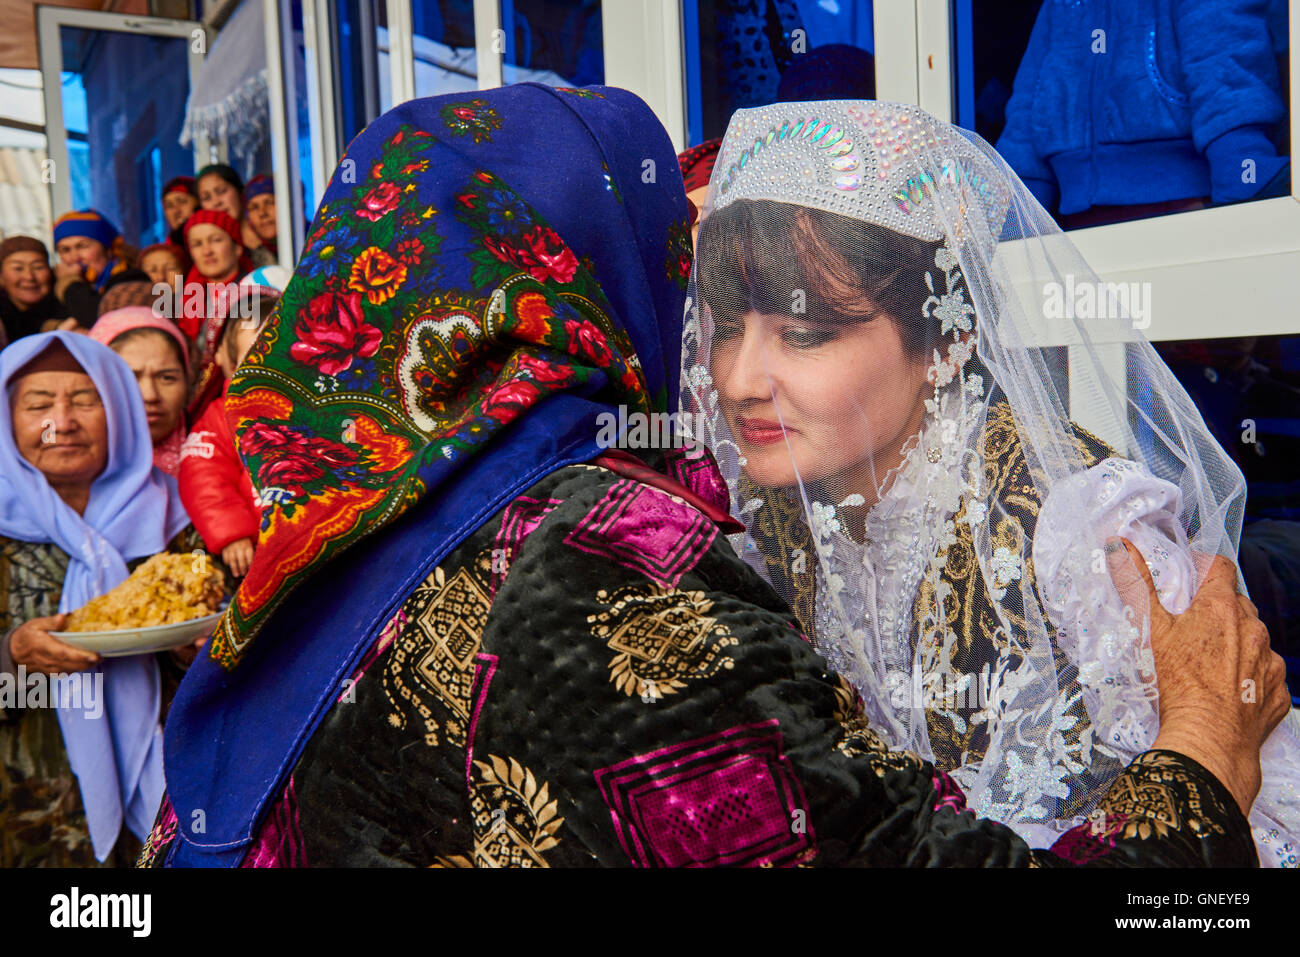 Usbekistan, Kachka Daria Region, Chakhrisabz, usbekische Hochzeit Stockfoto